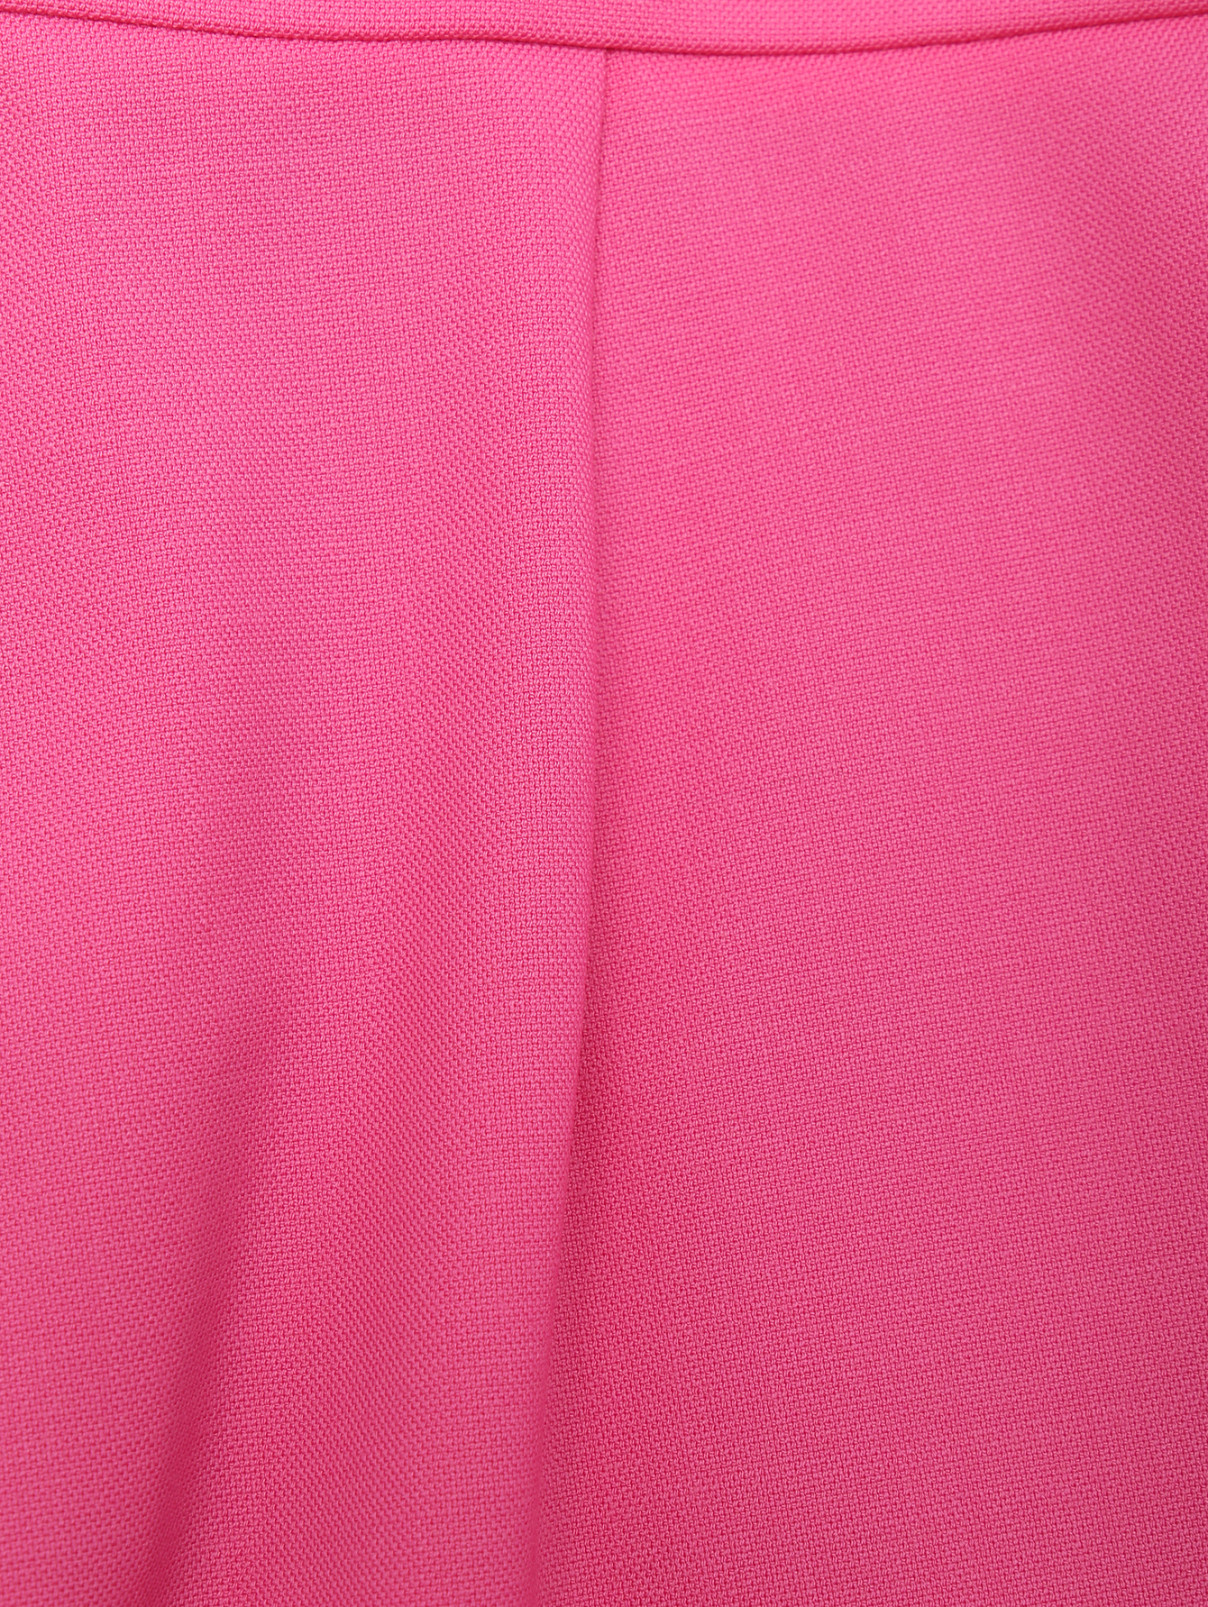 Брюки из шерсти укороченные Max Mara  –  Деталь  – Цвет:  Розовый